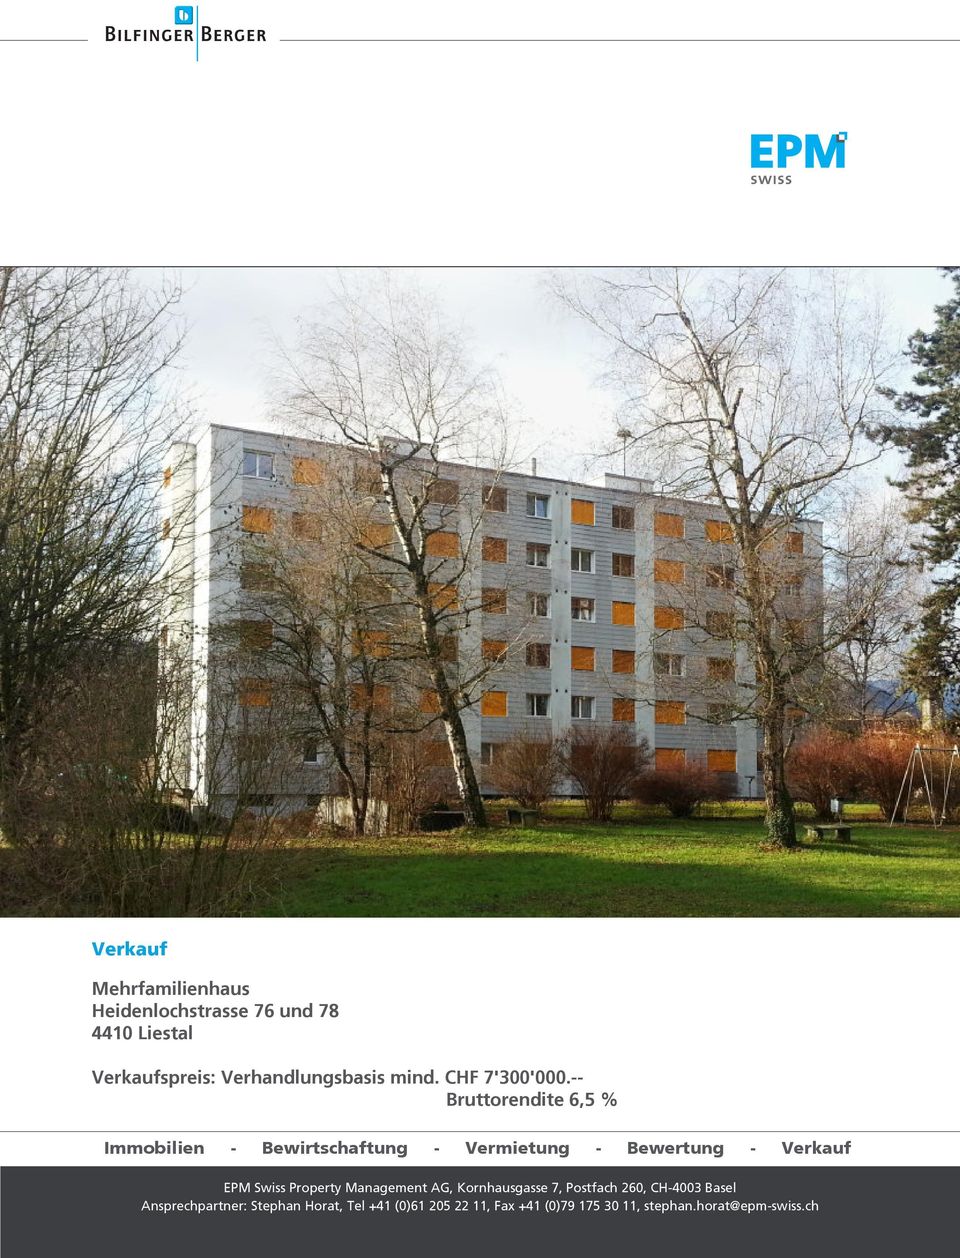 -- Bruttorendite 6,5 % Immobilien - Bewirtschaftung - Vermietung - Bewertung - Verkauf EPM Swiss